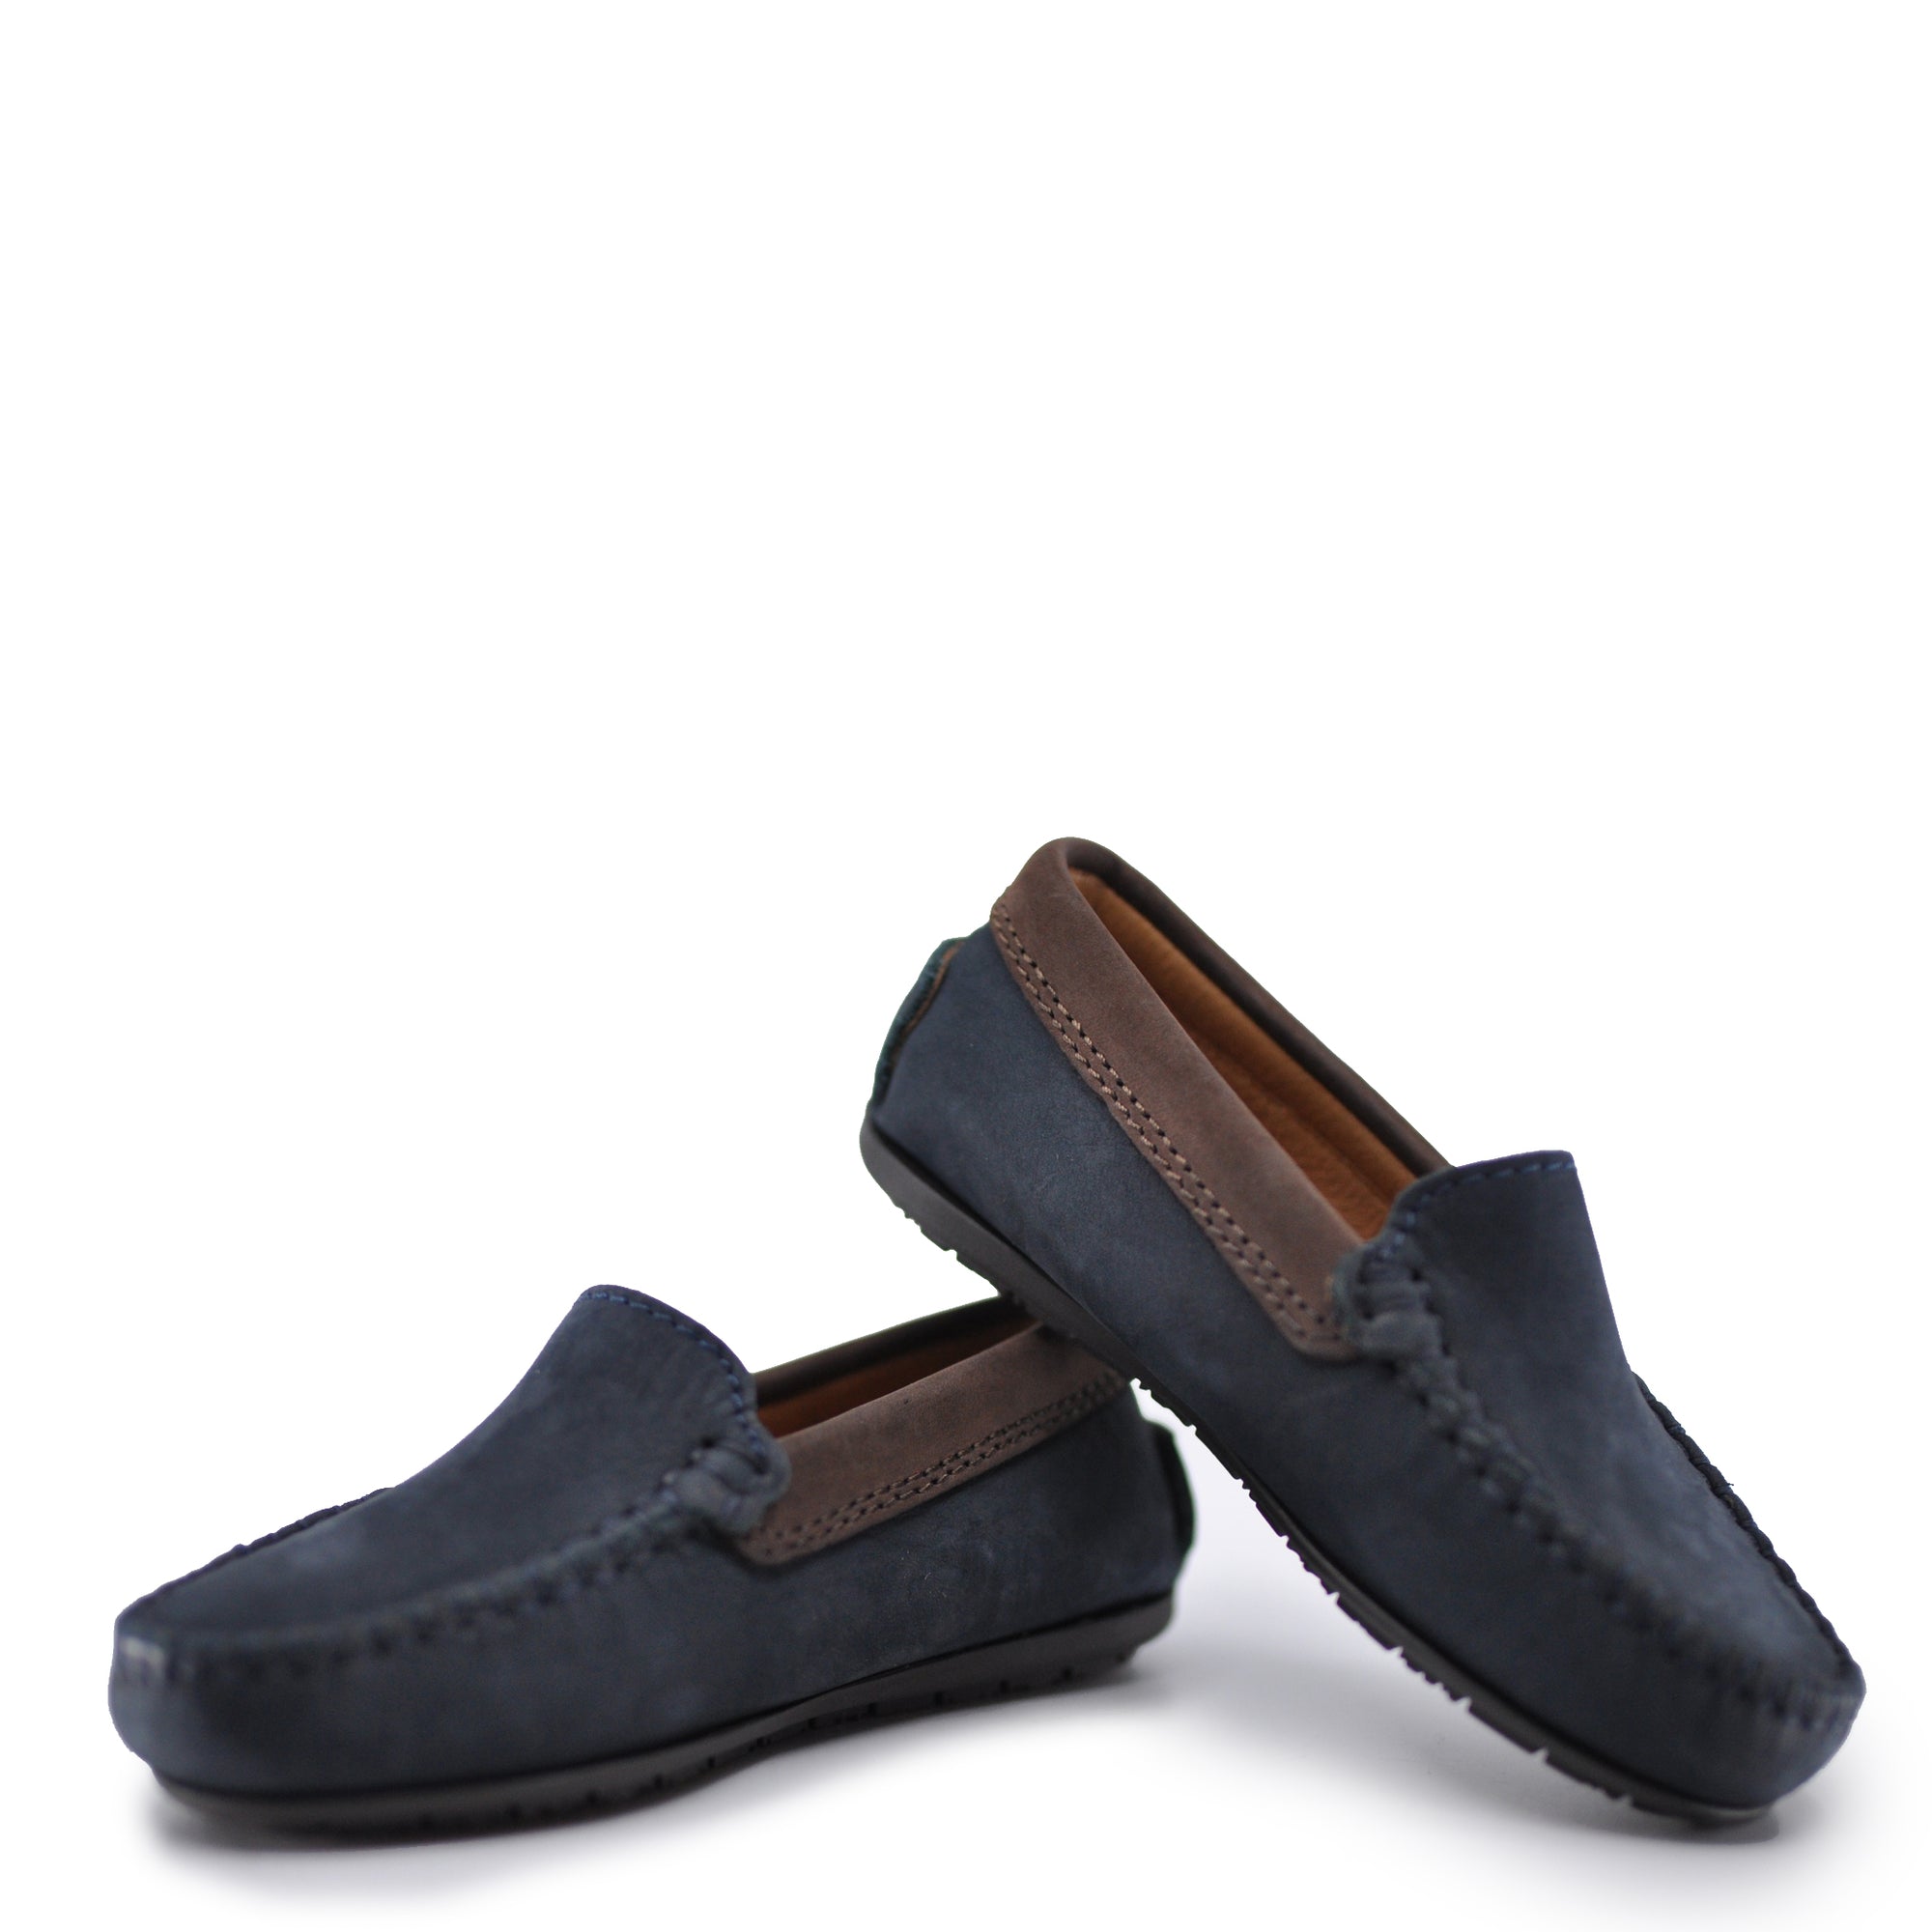 Atlanta Mocassin Navy and Brown Nubok Loafer-Tassel Children Shoes